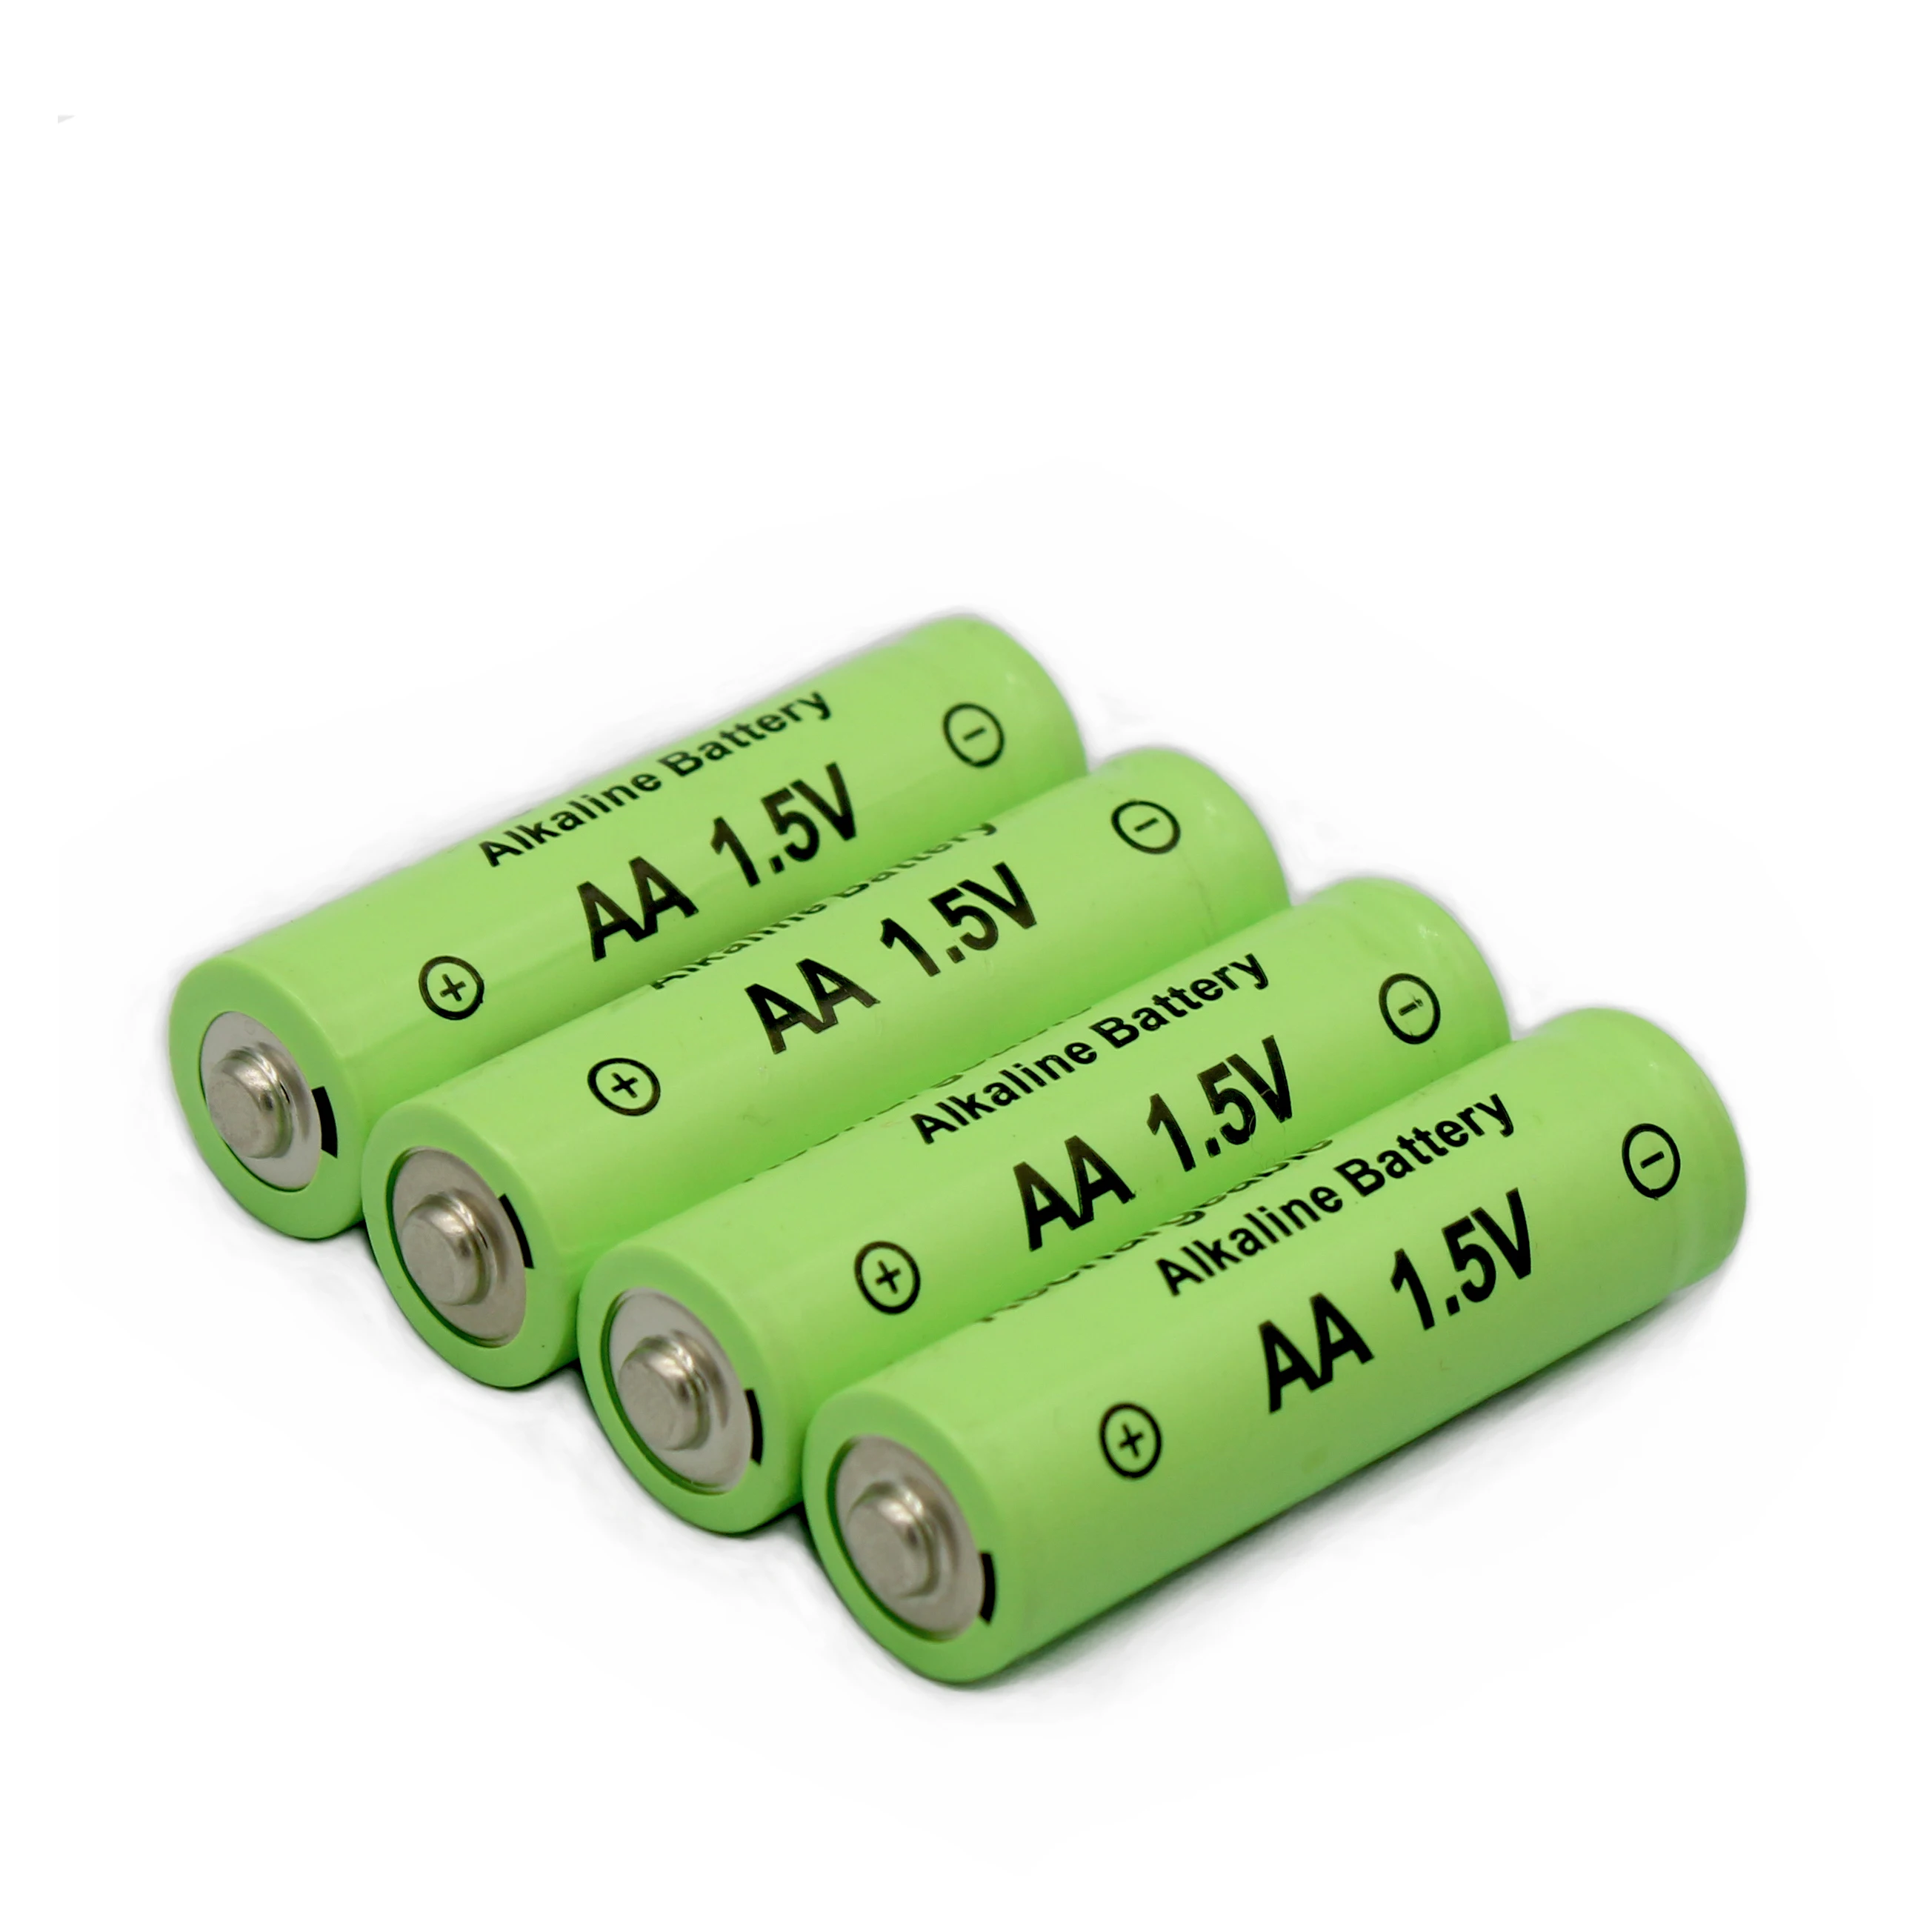 100%.Orijinal. Yeniden şarj edilebilir. Nİ-MH.baterías recargables. 1,5 V. AA4800mAh.Para el control remoto. Juguetes. Iluminación exterior....